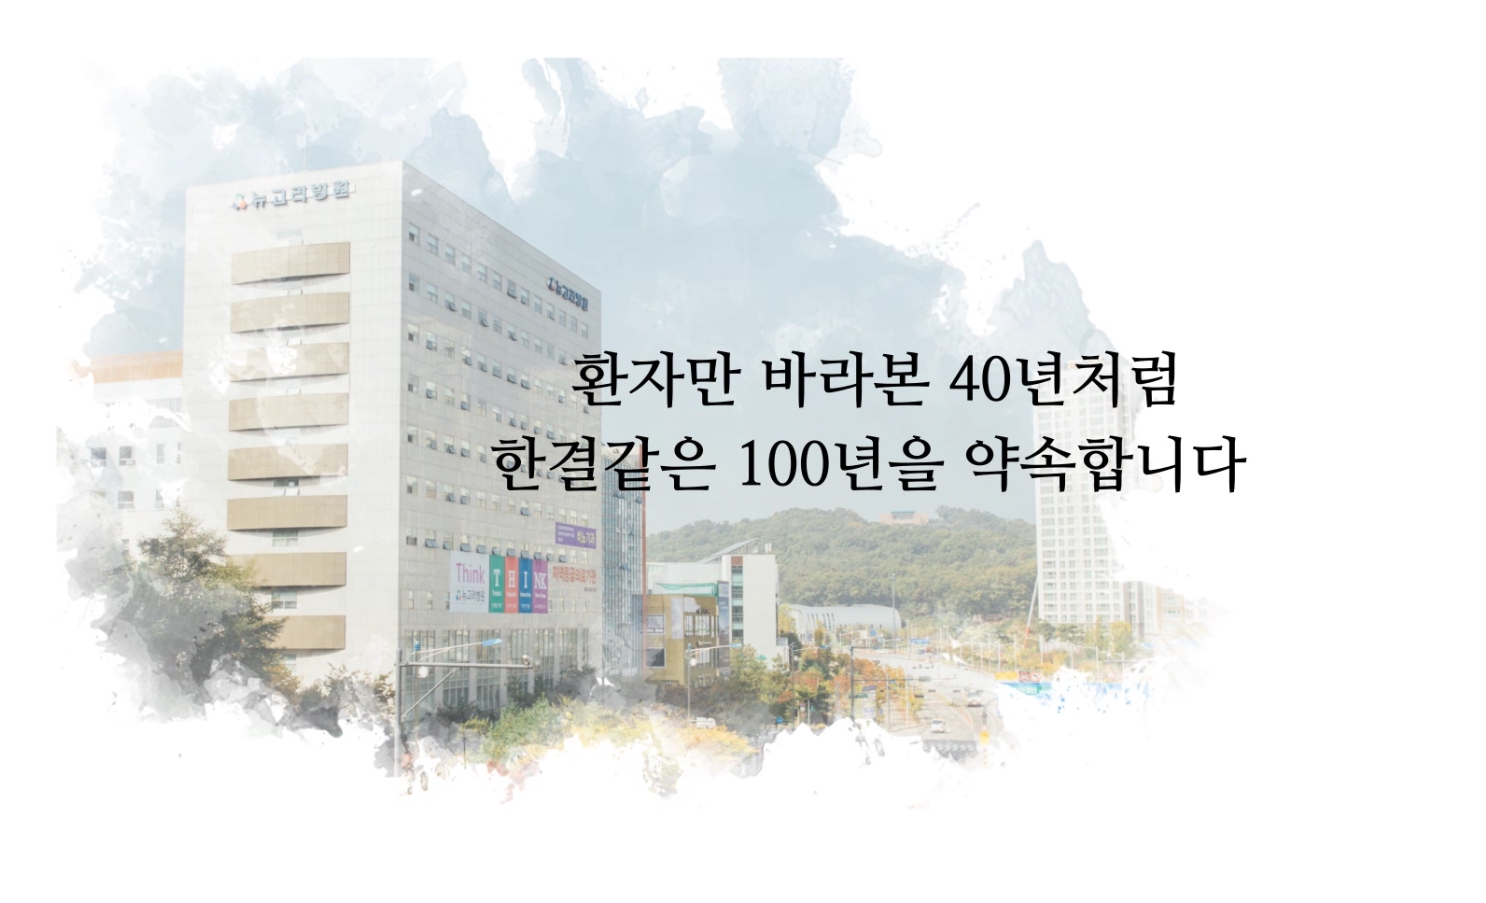 뉴고려병원 신관개관식 기념 소개영상